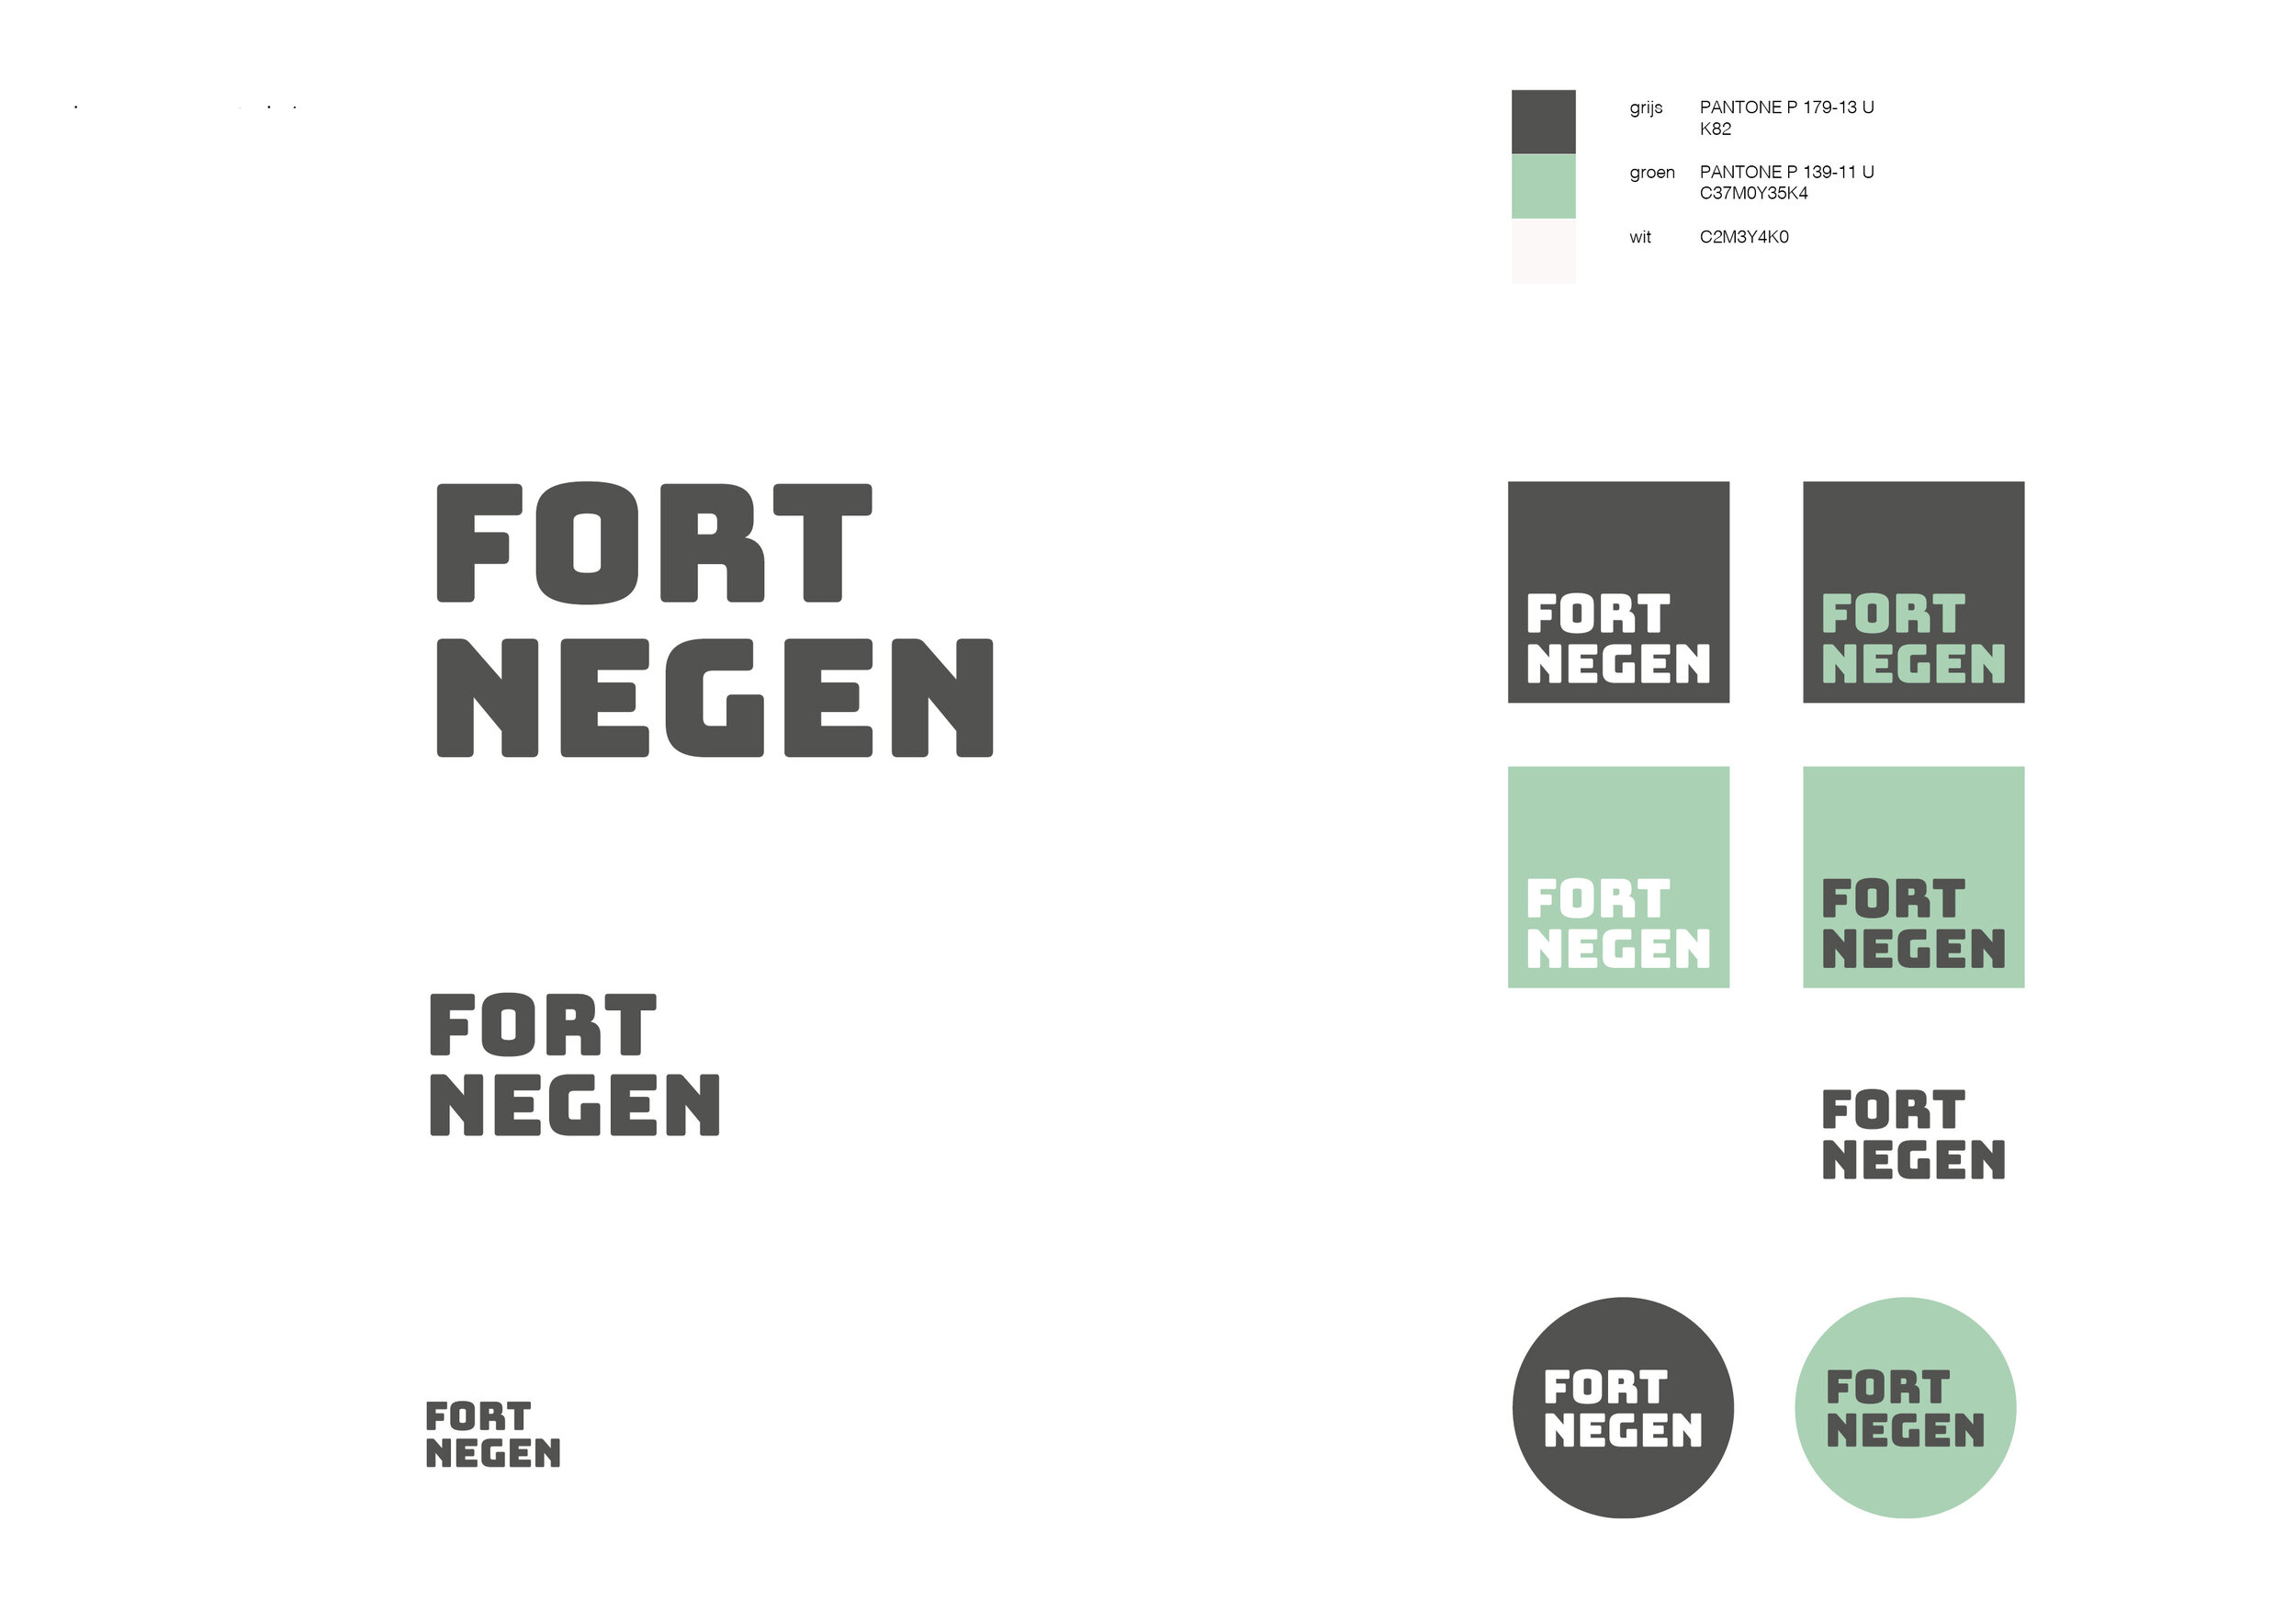 Fort Negen_Brand Identity_IVA2D3D_jpg4.jpg